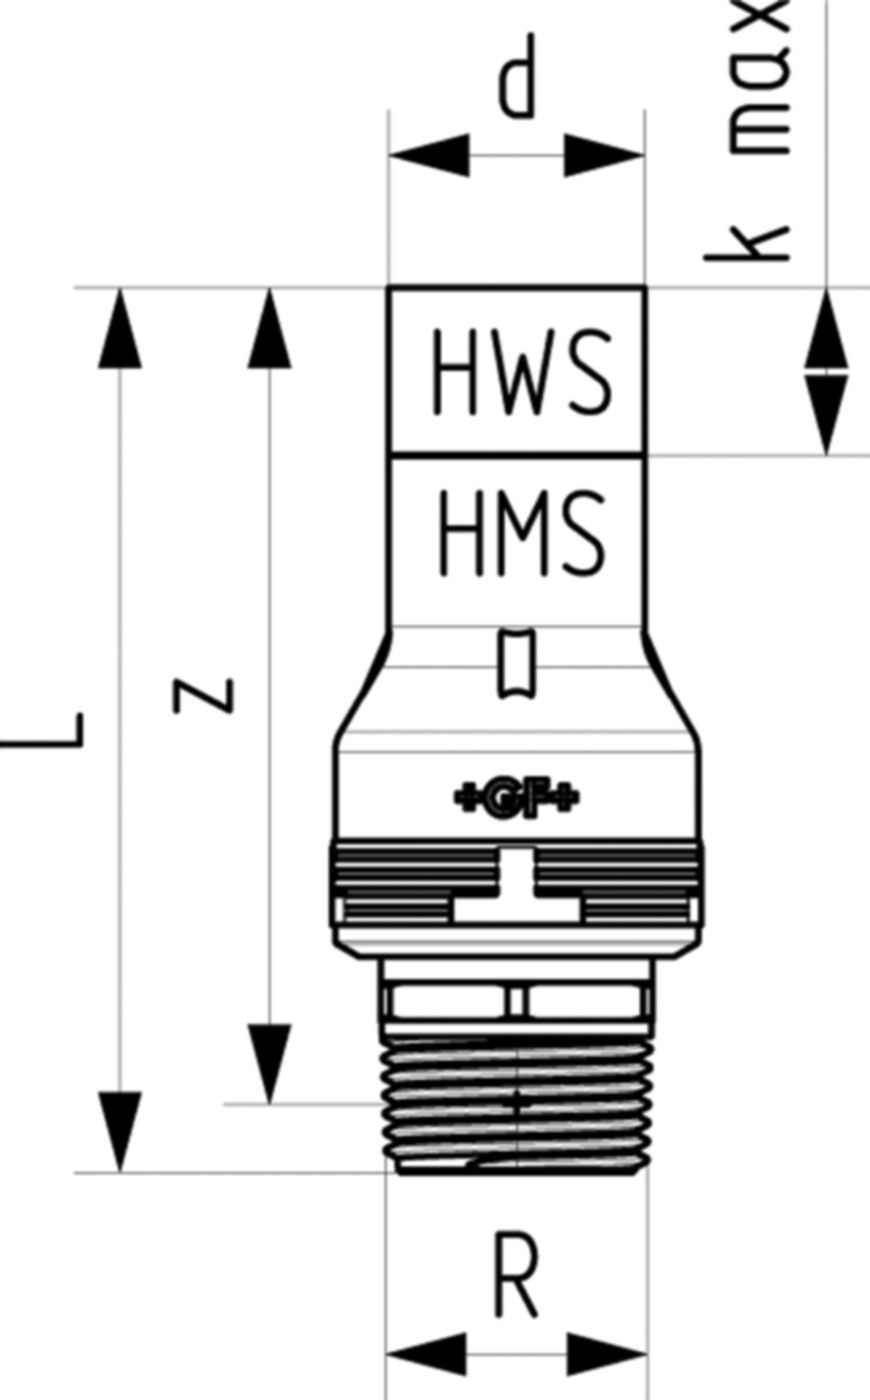 Übergang mit Aussengewinde 6214 25mm - 3/4" 761 069 669 (761 069 388) - GF Instaflex-HWS-Schweisssystem